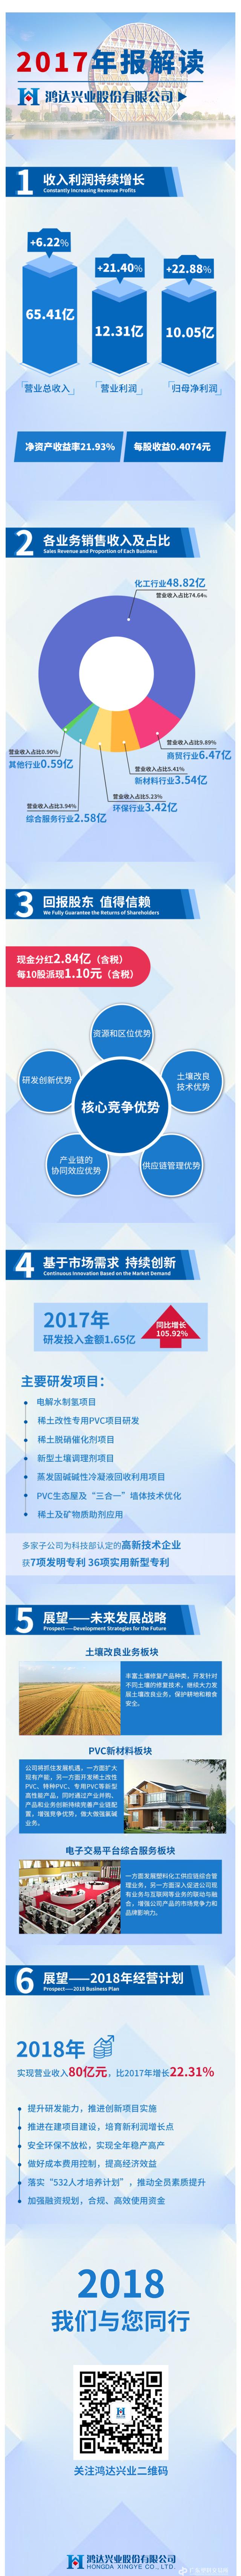 2017年报解读长图.png